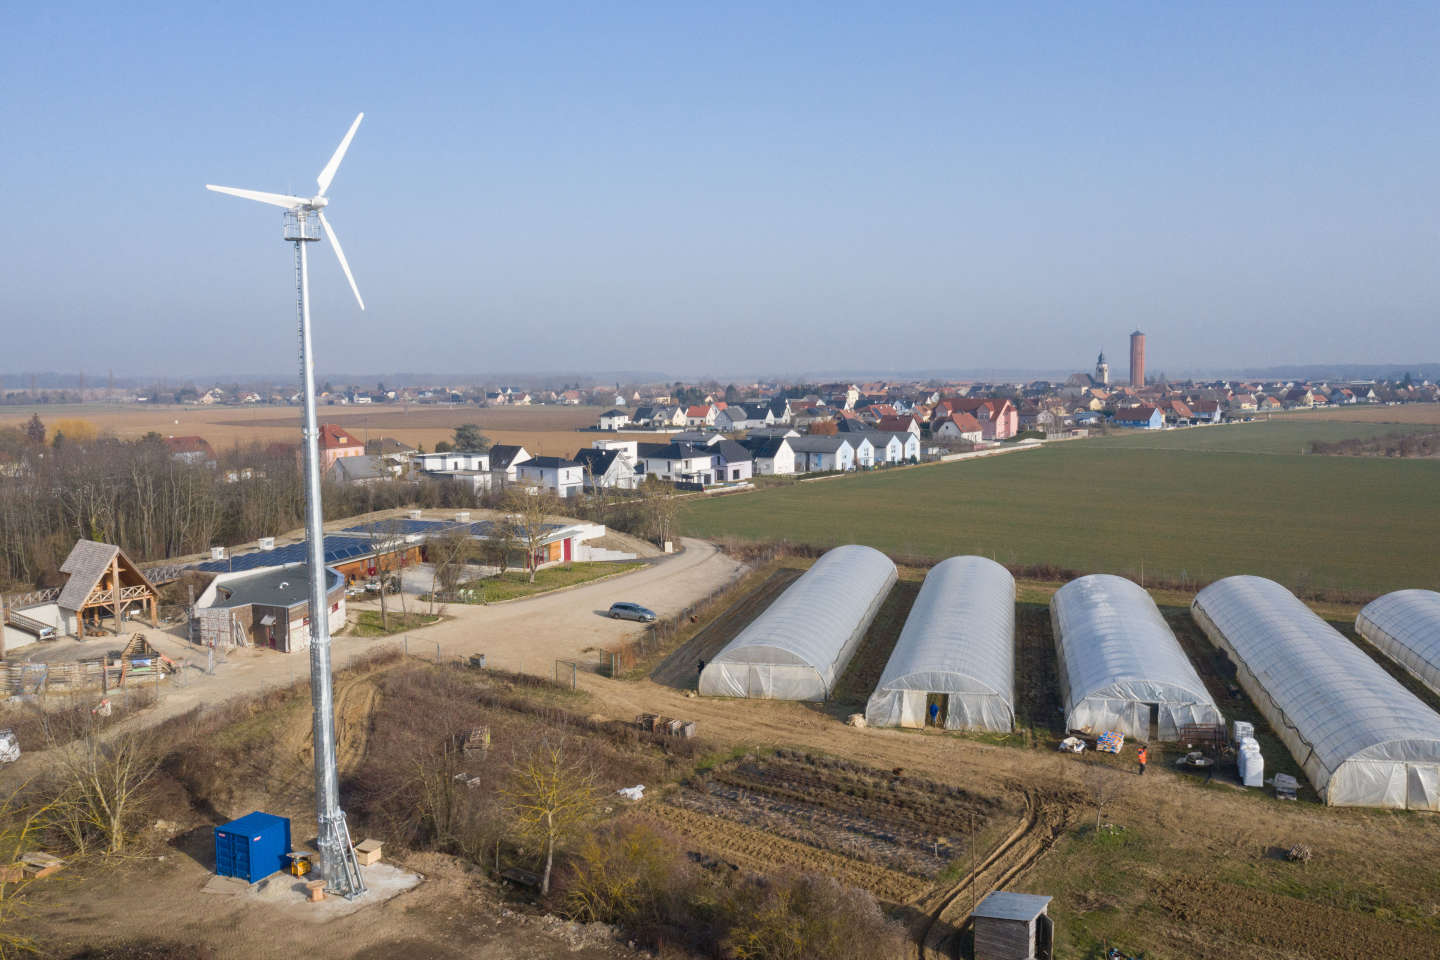 A Ungersheim, village pionnier de la transition écologique, l’objectif d’autonomie énergétique et alimentaire repoussé en raison de la crise